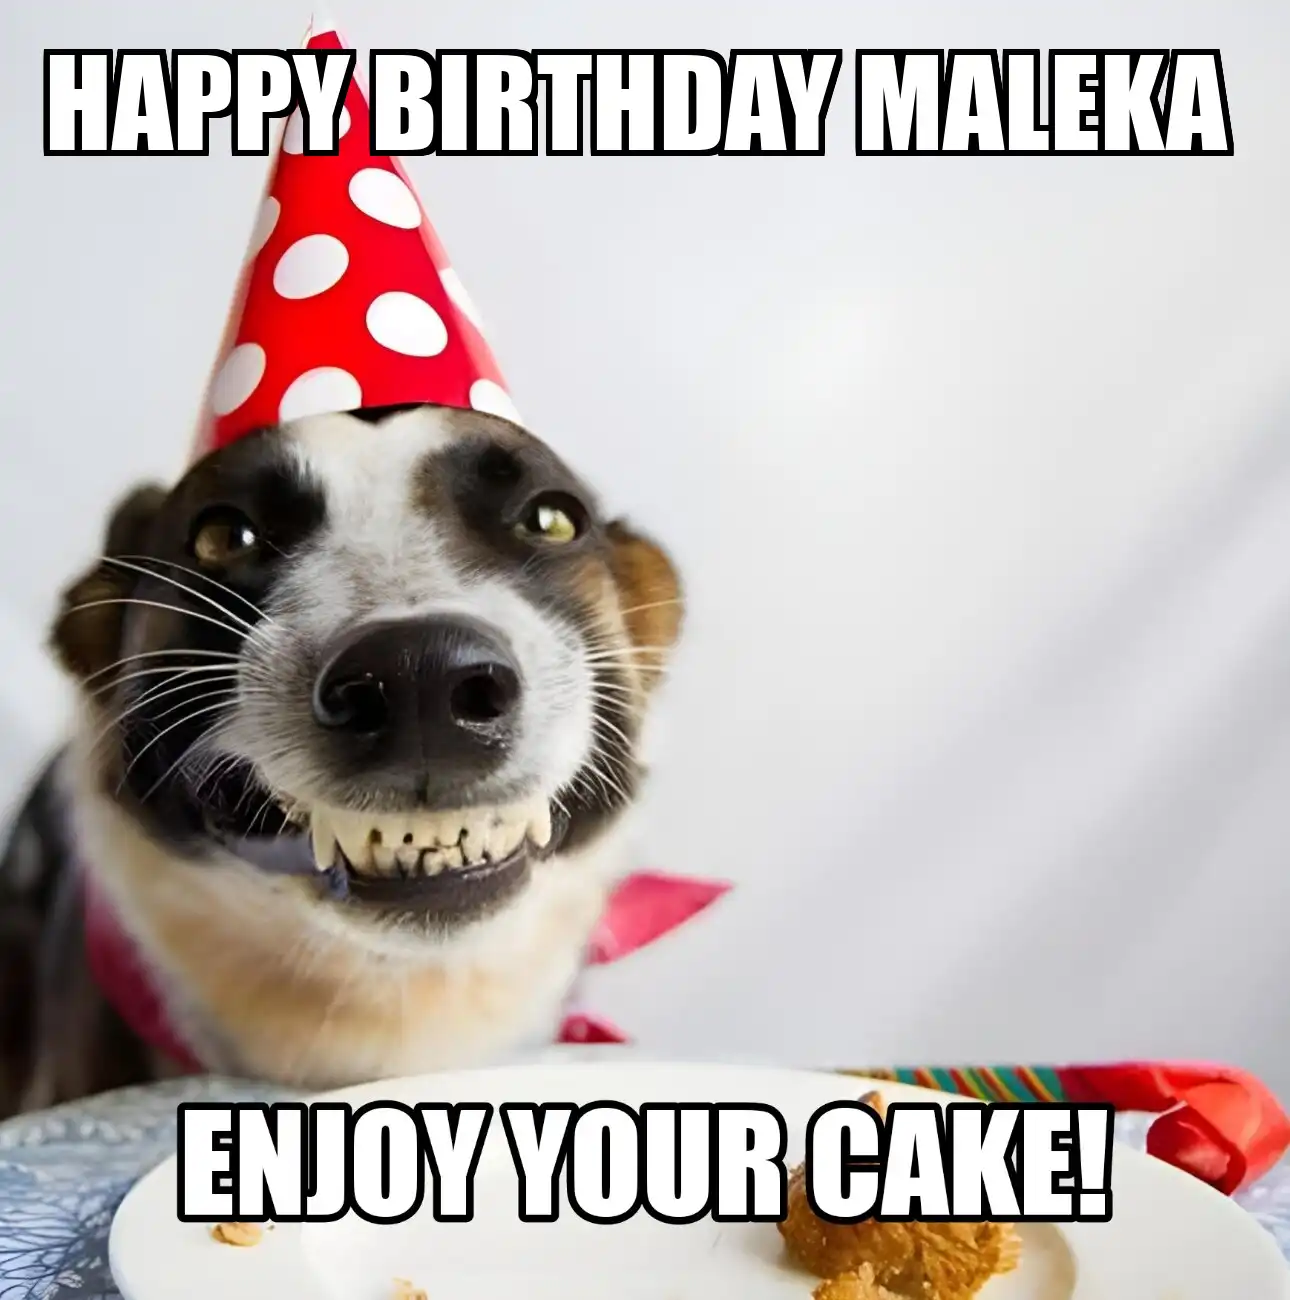 Happy Birthday Maleka Enjoy Your Cake Dog Meme